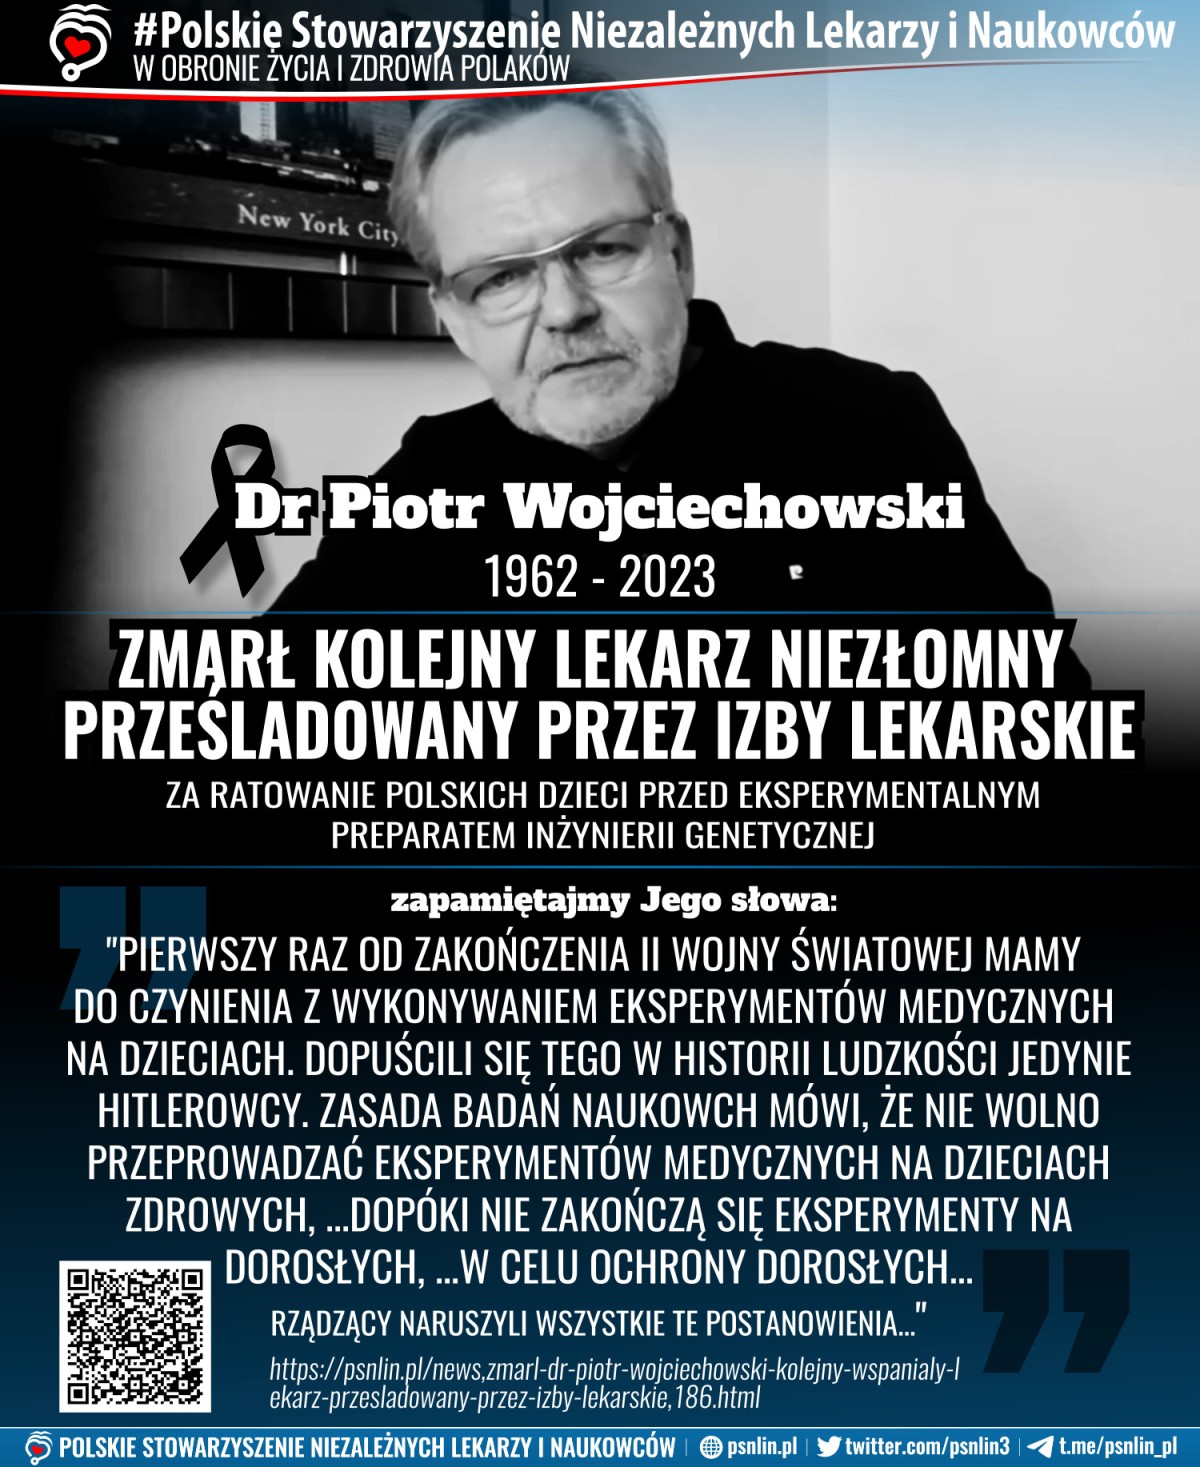 Zmał dr Piotr Wojciechowski - kolejny lekarz niezłomny prześladowany przez izby lekarskie - członek PSNLiN